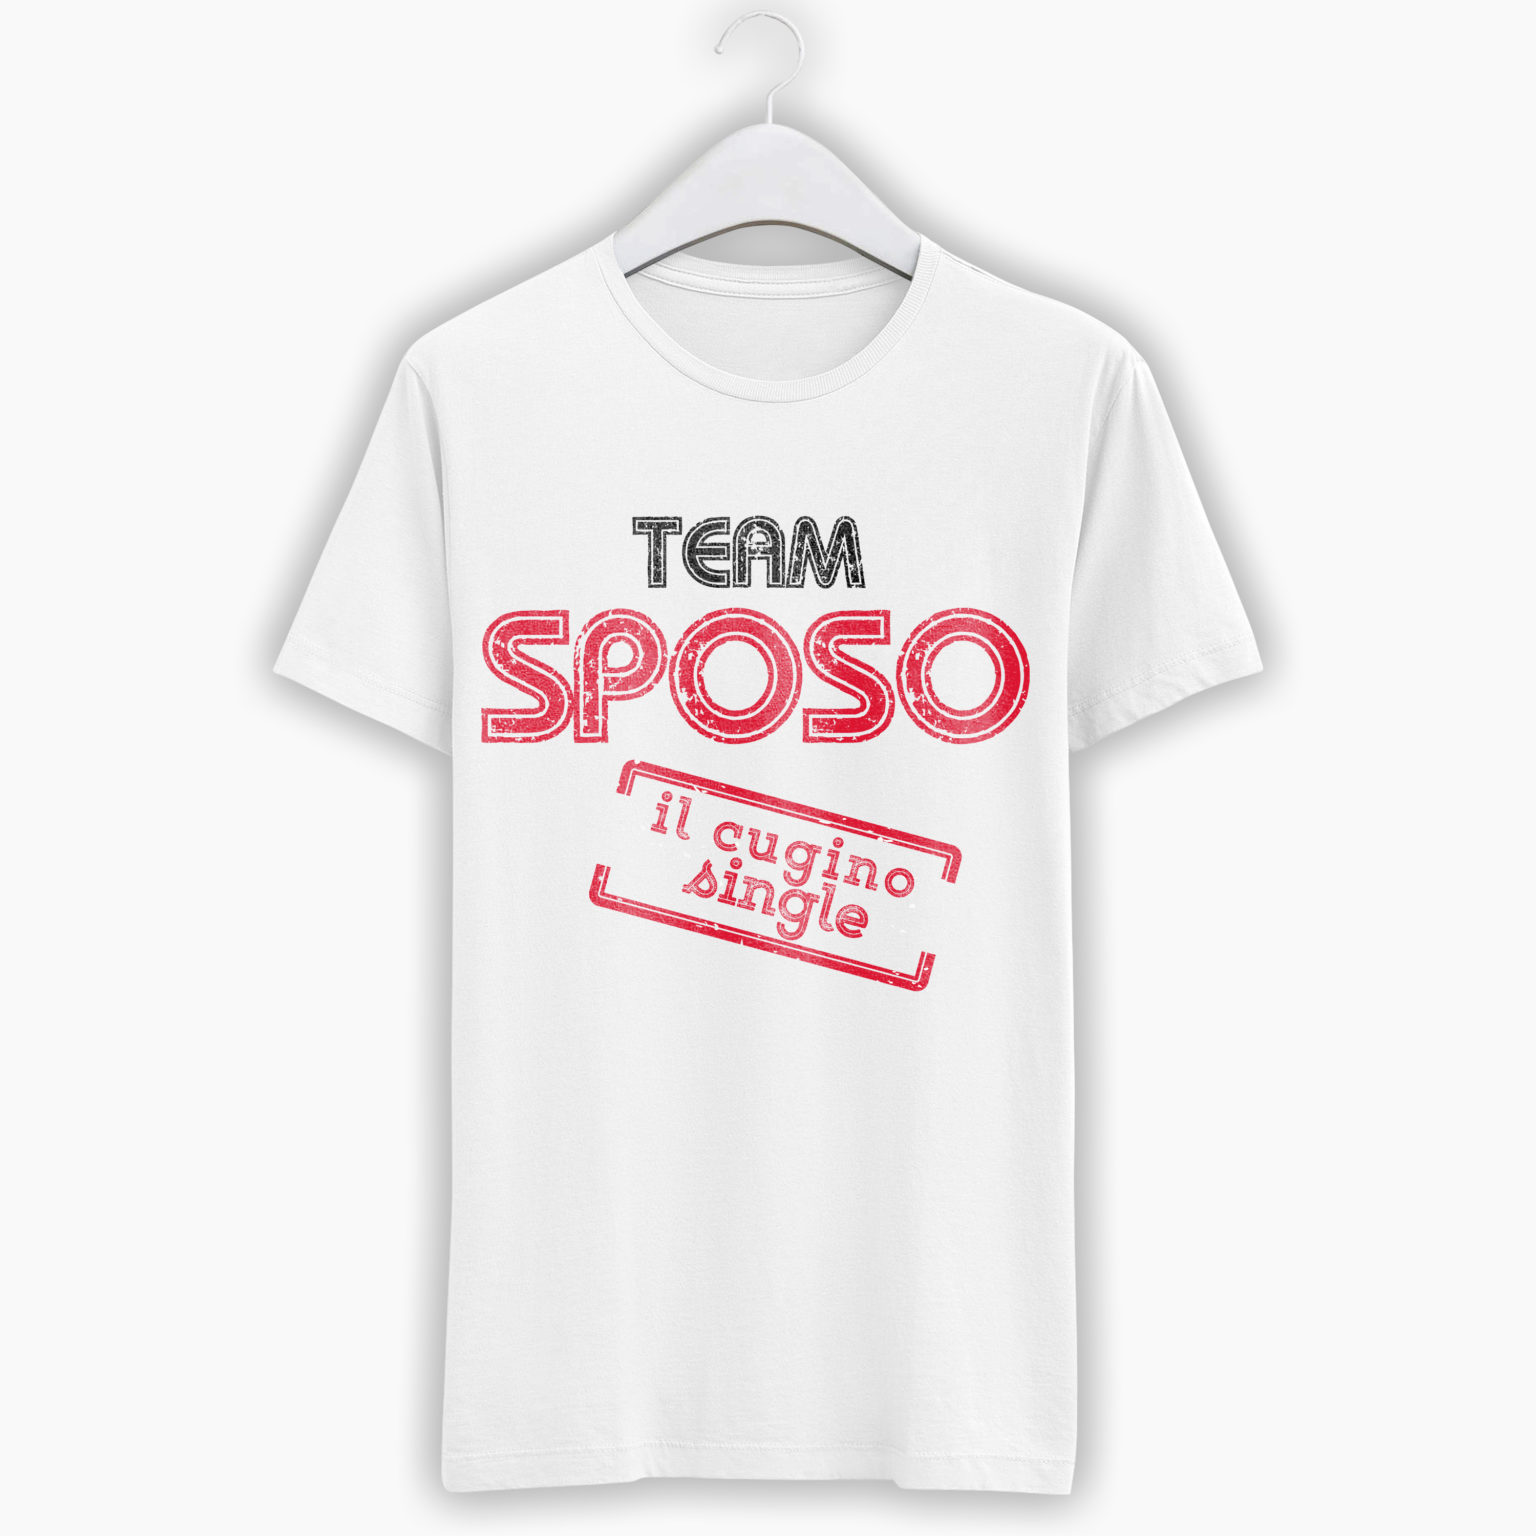 T-Shirt Addio Al Celibato – Team Sposo Il Cugino Single